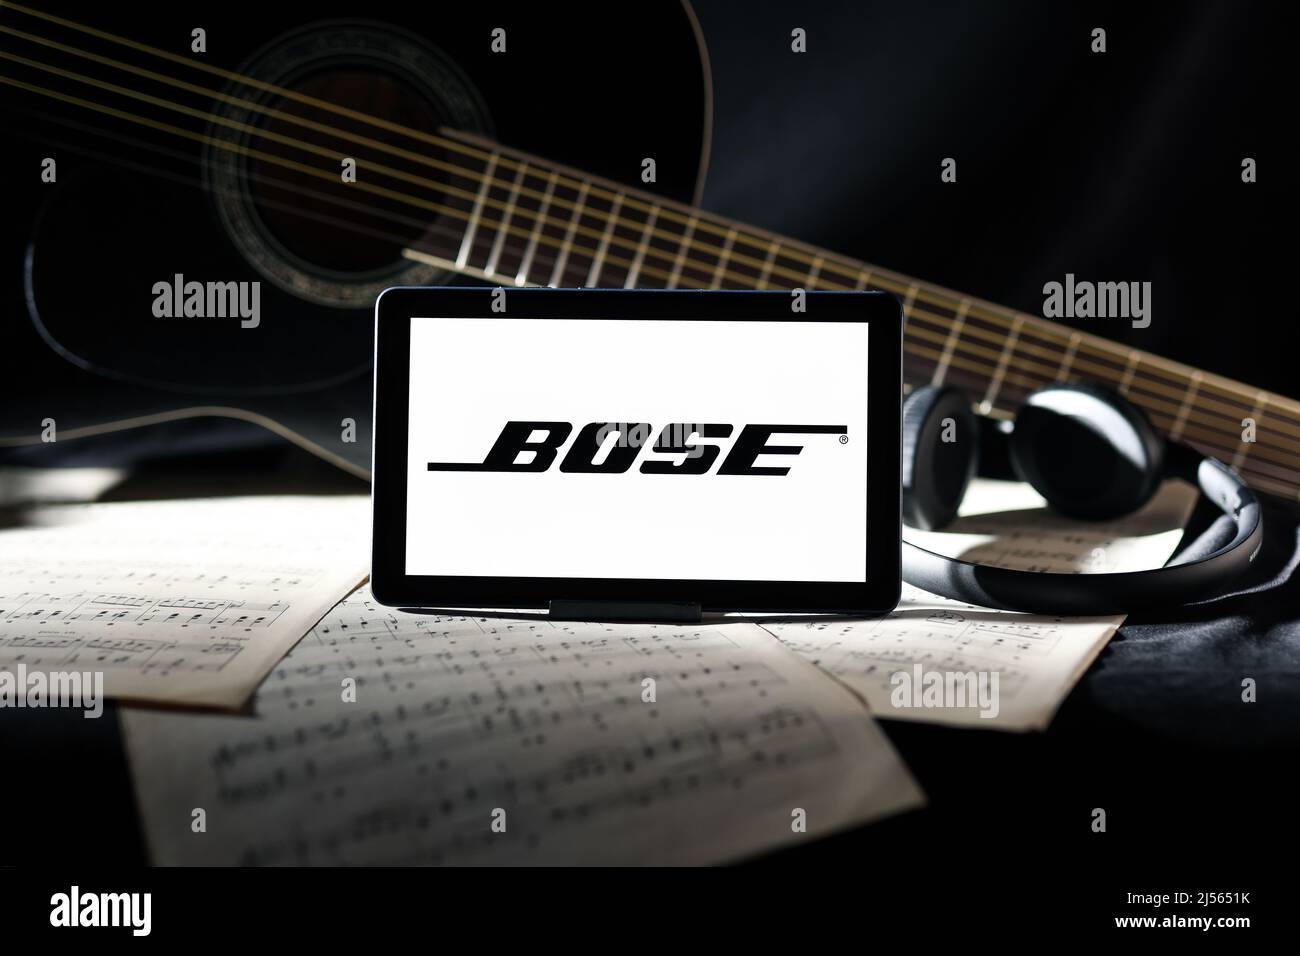 Editoriale Bose. Foto illustrativa per notizie su Bose - una società di produzione americana che vende prevalentemente apparecchiature audio Foto Stock